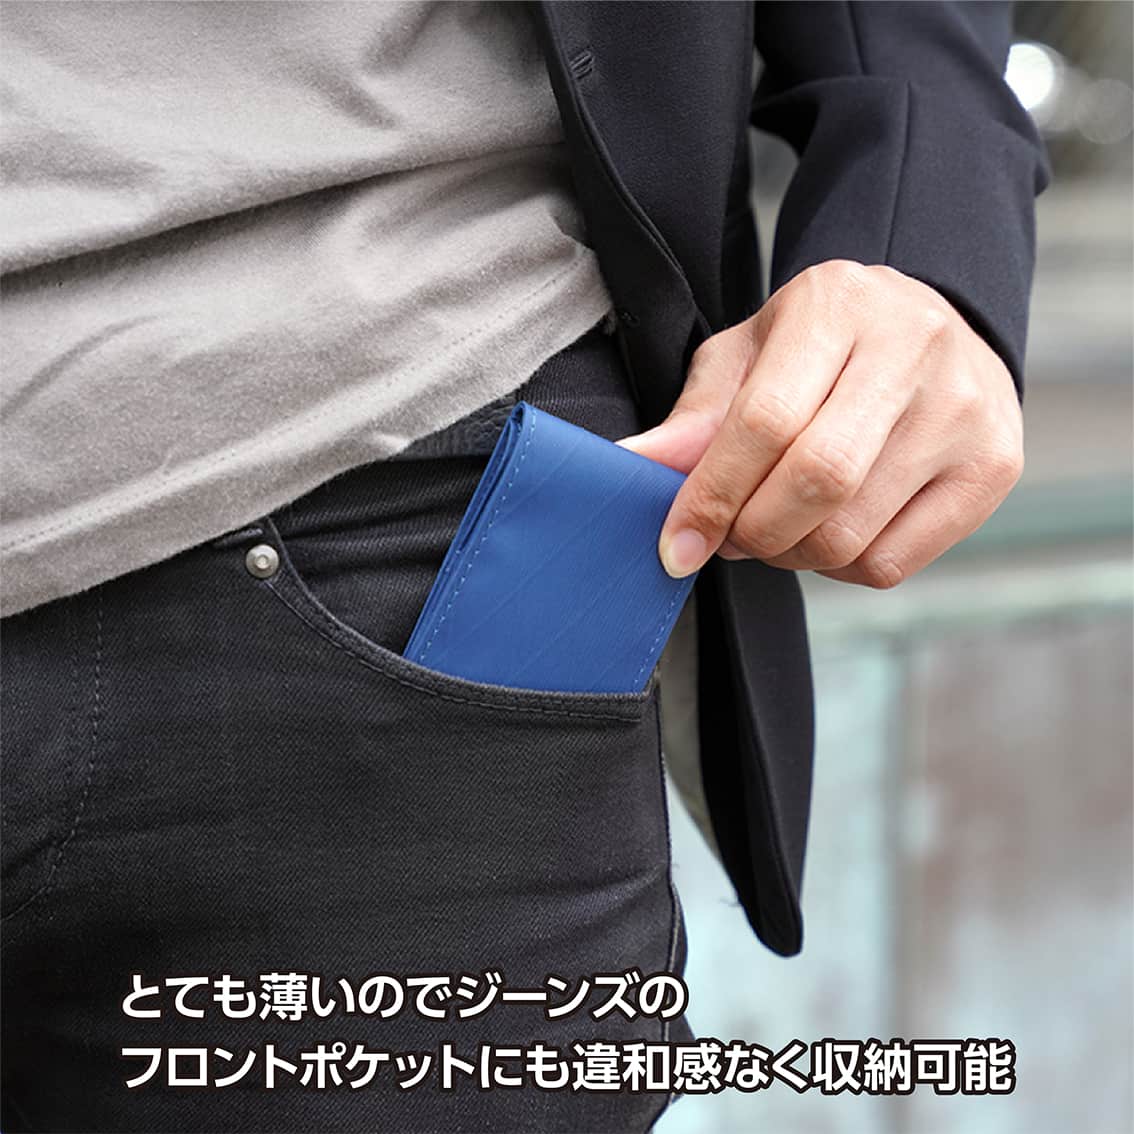 XGO.style カードケース MagSafe 対応 マグネット スリム おしゃれ 薄型 ミニ財布 メンズ レディース ビジネス